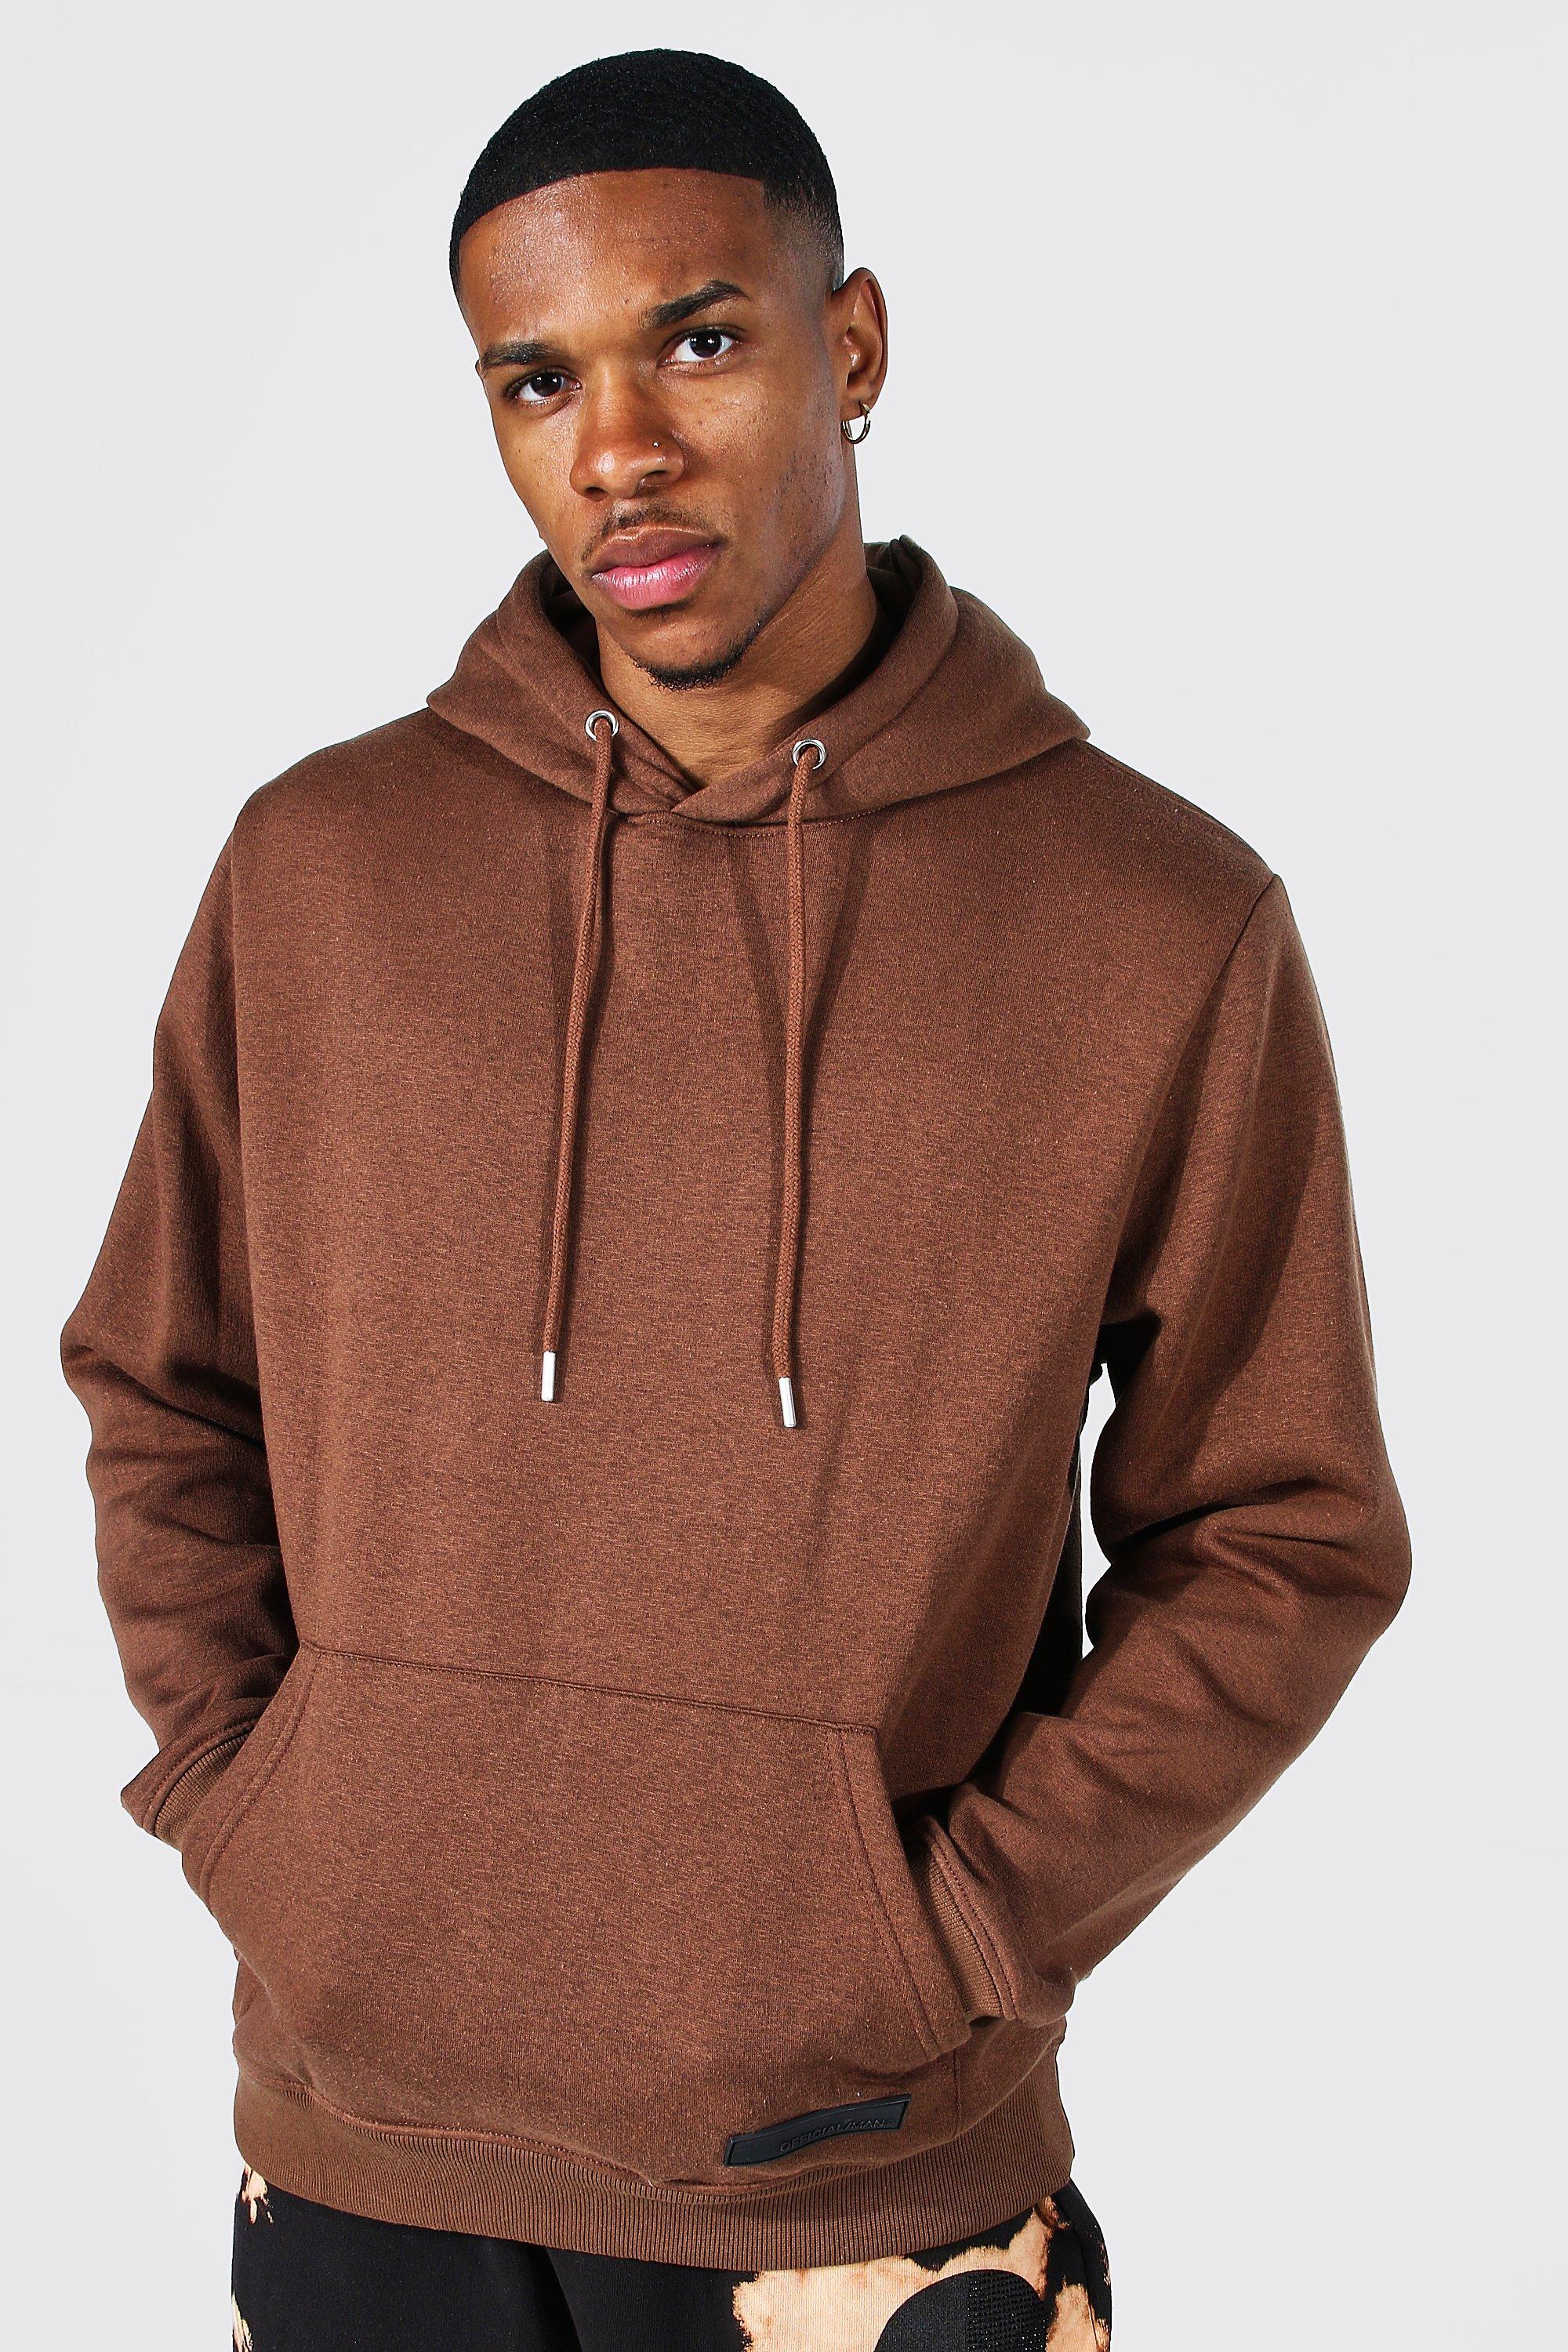 T-shirt taille L | Men's brown hoodies | 127-0 UK